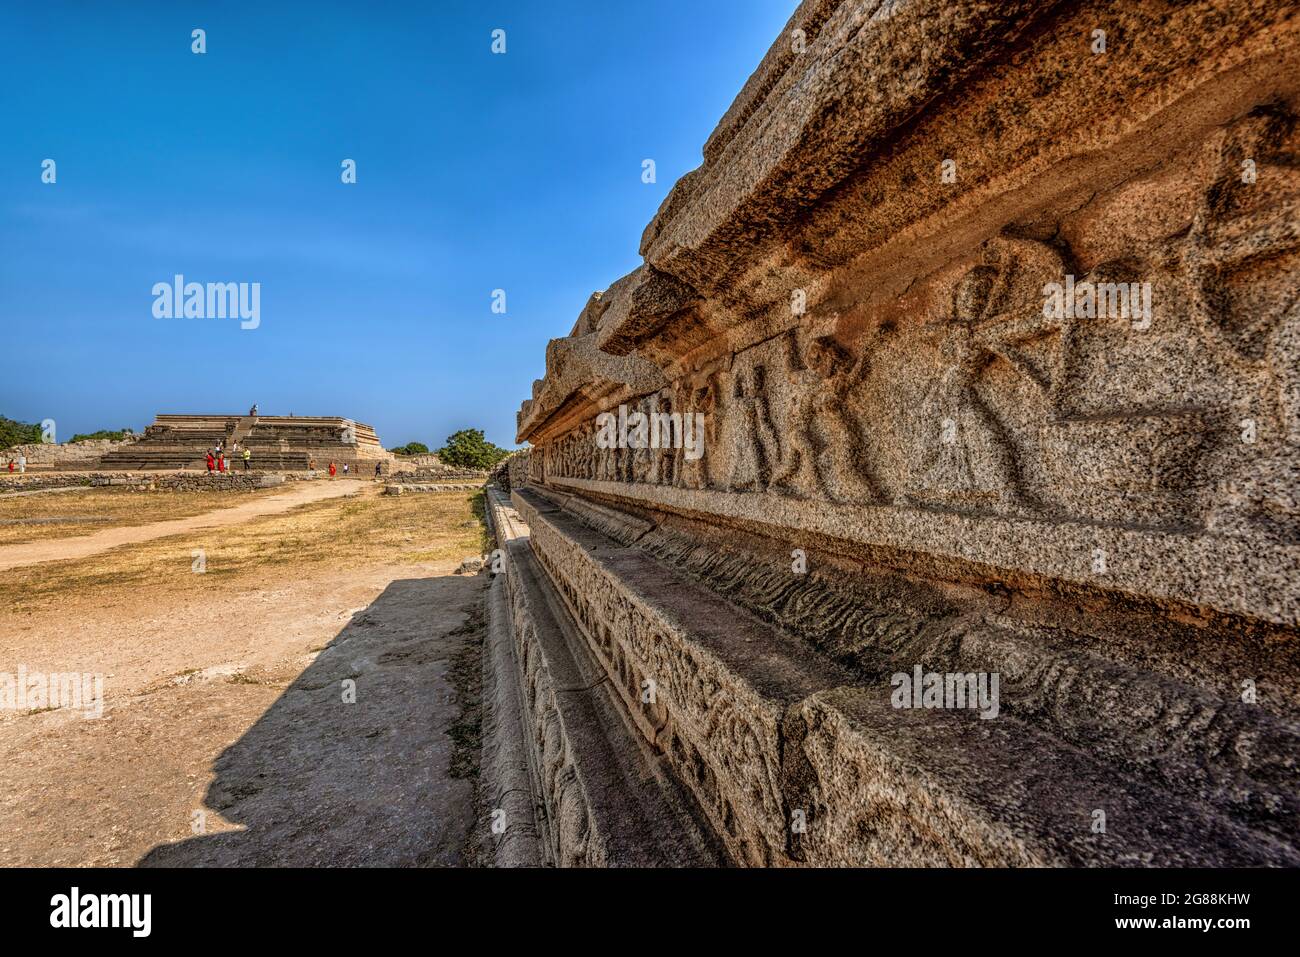 Hampi, Karnataka, India - 14 de enero de 2020 : Vista de Mahanavami Dibba o la Plataforma Dussehra es lo que queda del Palacio de la Victoria. Estructura más alta Foto de stock